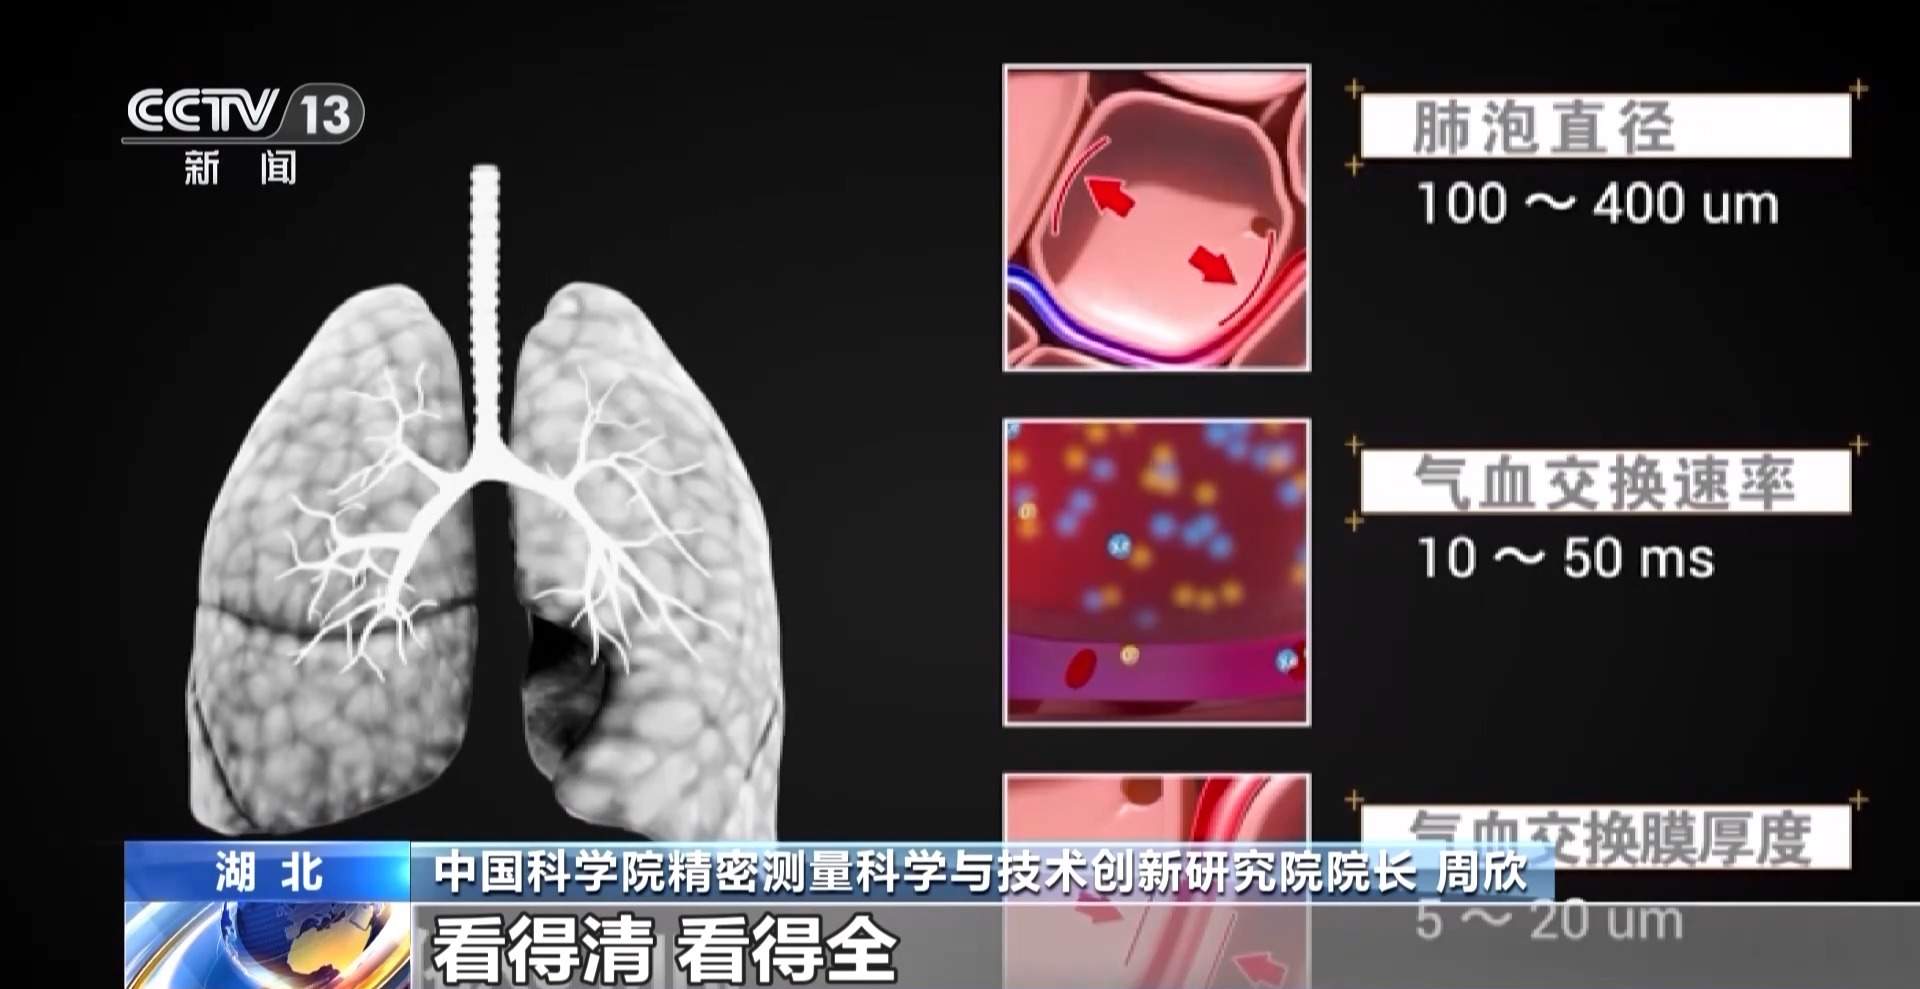 肺部磁共振技术取得新突破 采样时间提升到3.5秒